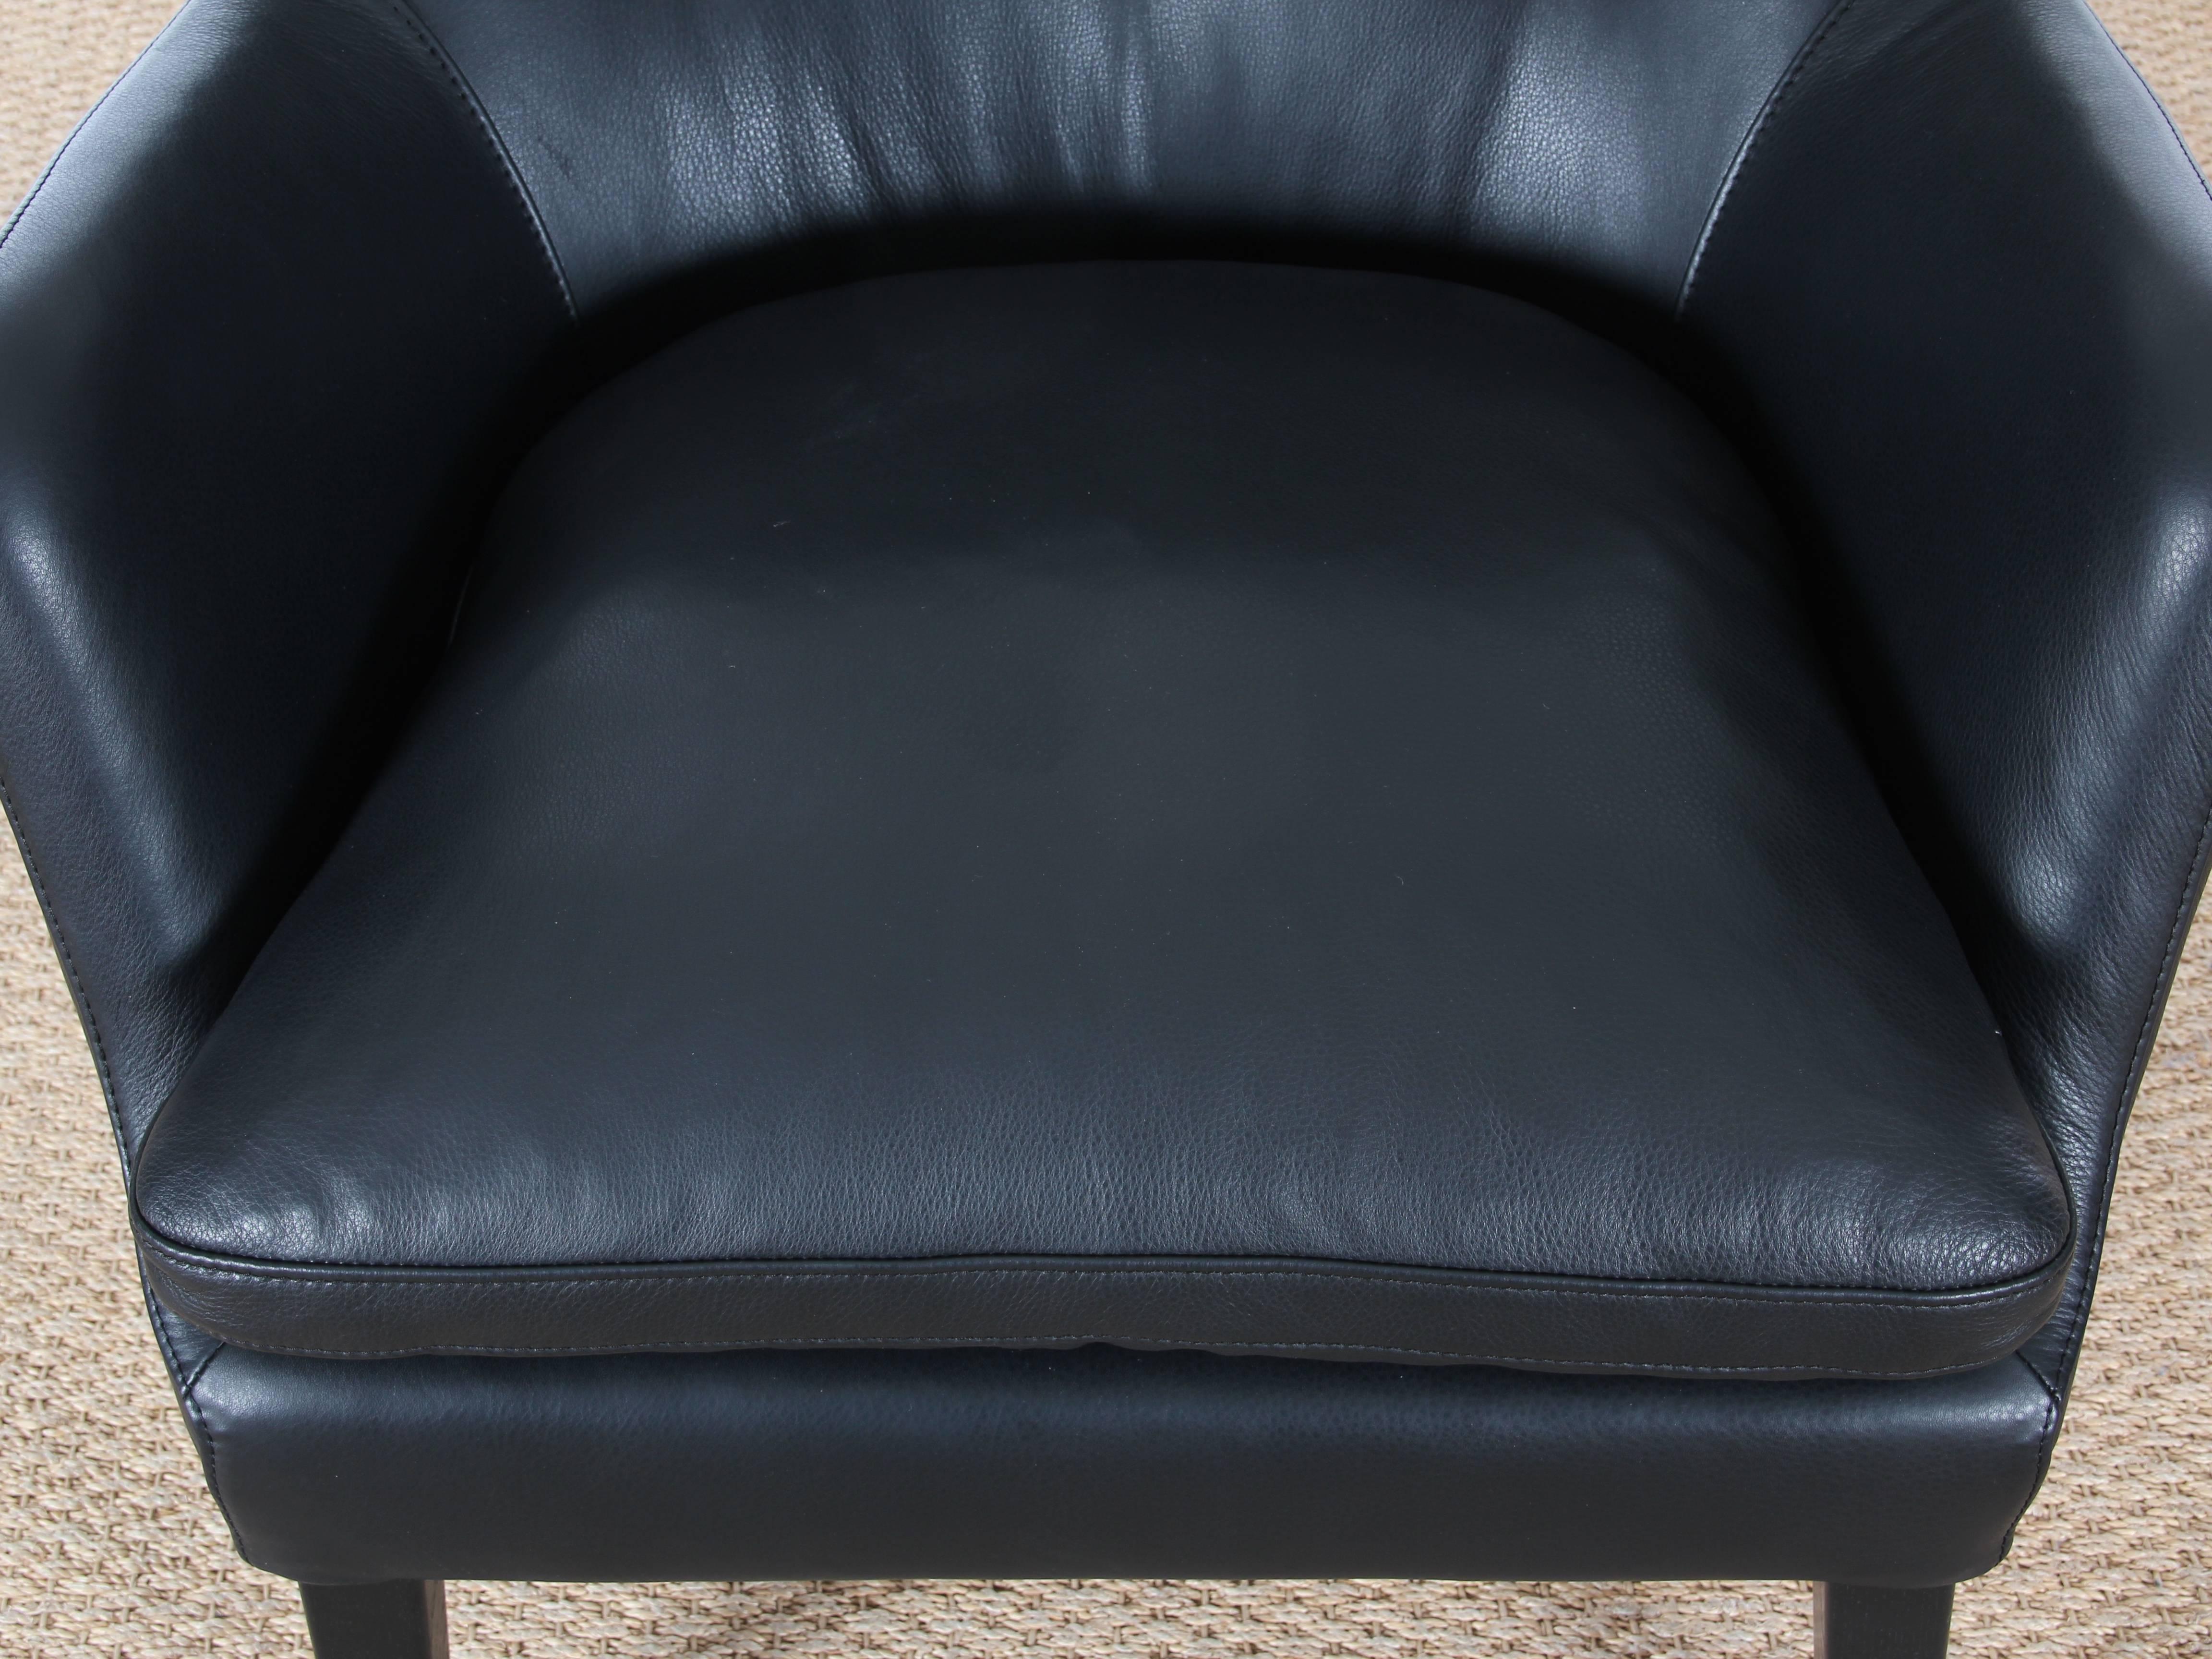 Leather Mid-Century Modern Scandinavian Lounge Chair by Arne Vodder AV 53 New Release For Sale